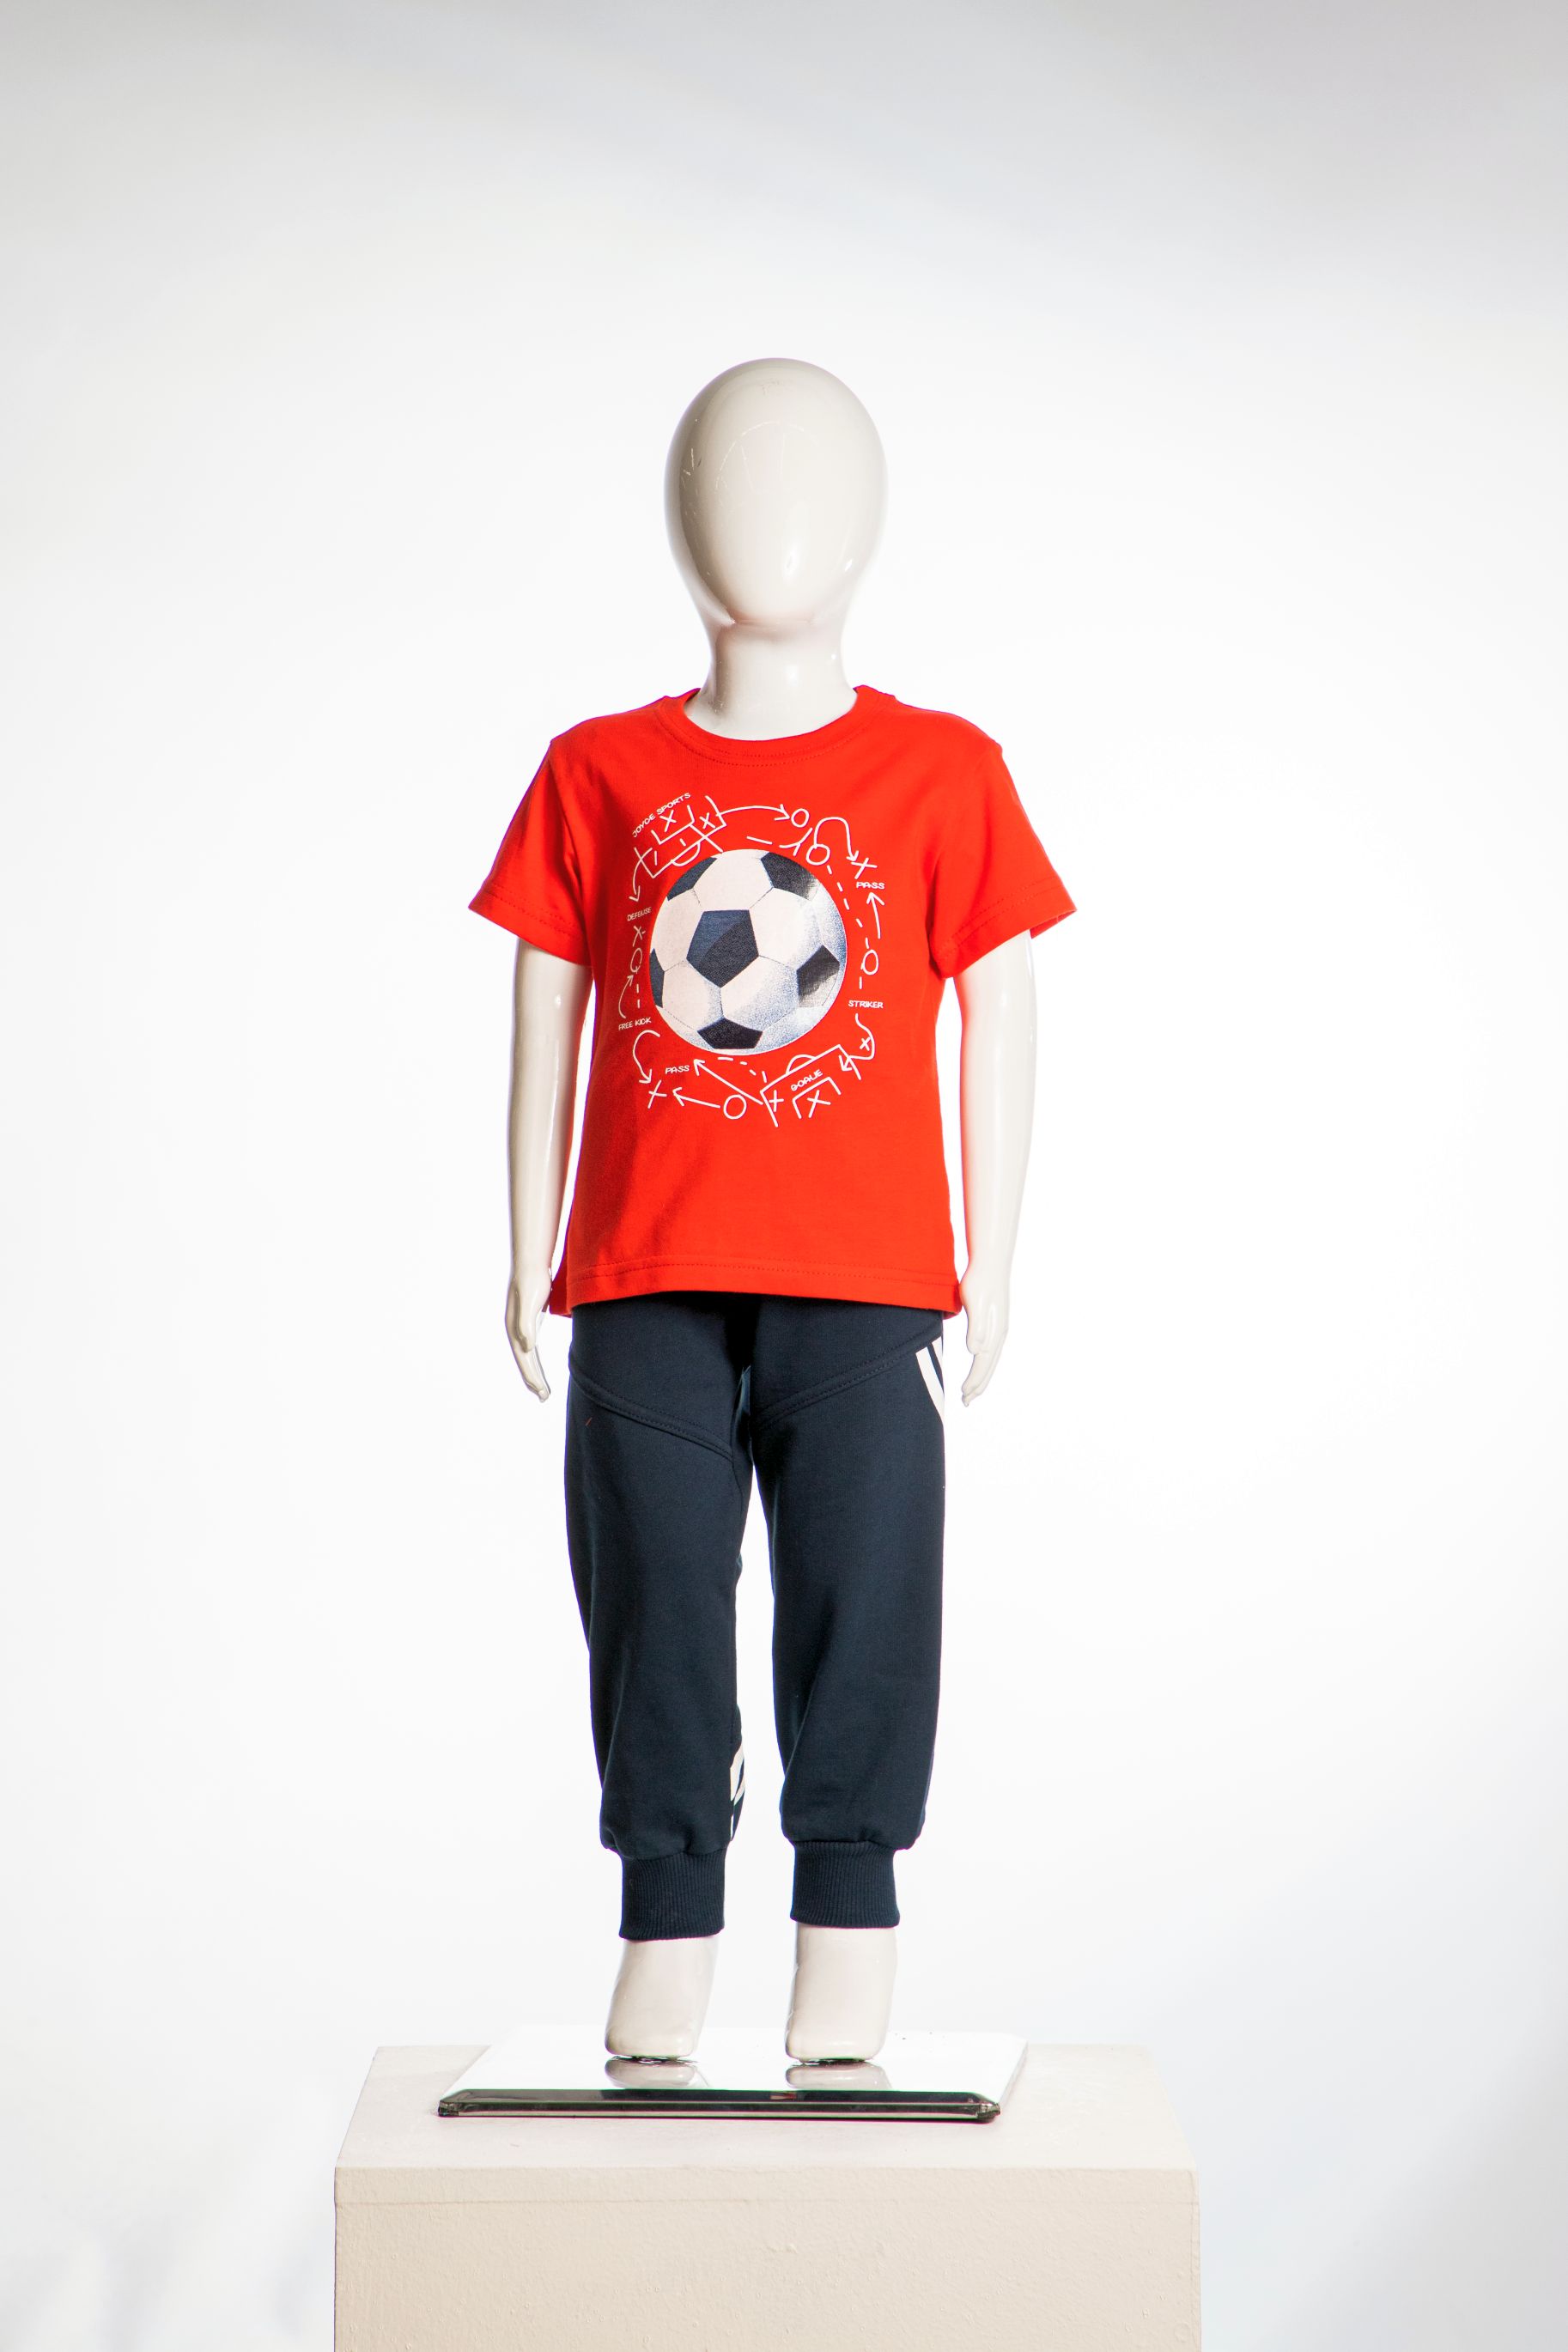 Chlapecká tepláková souprava "SOCCER BALL"/Červená, šedá Barva: Červená, Velikost: vel. 3 (98/100 cm)